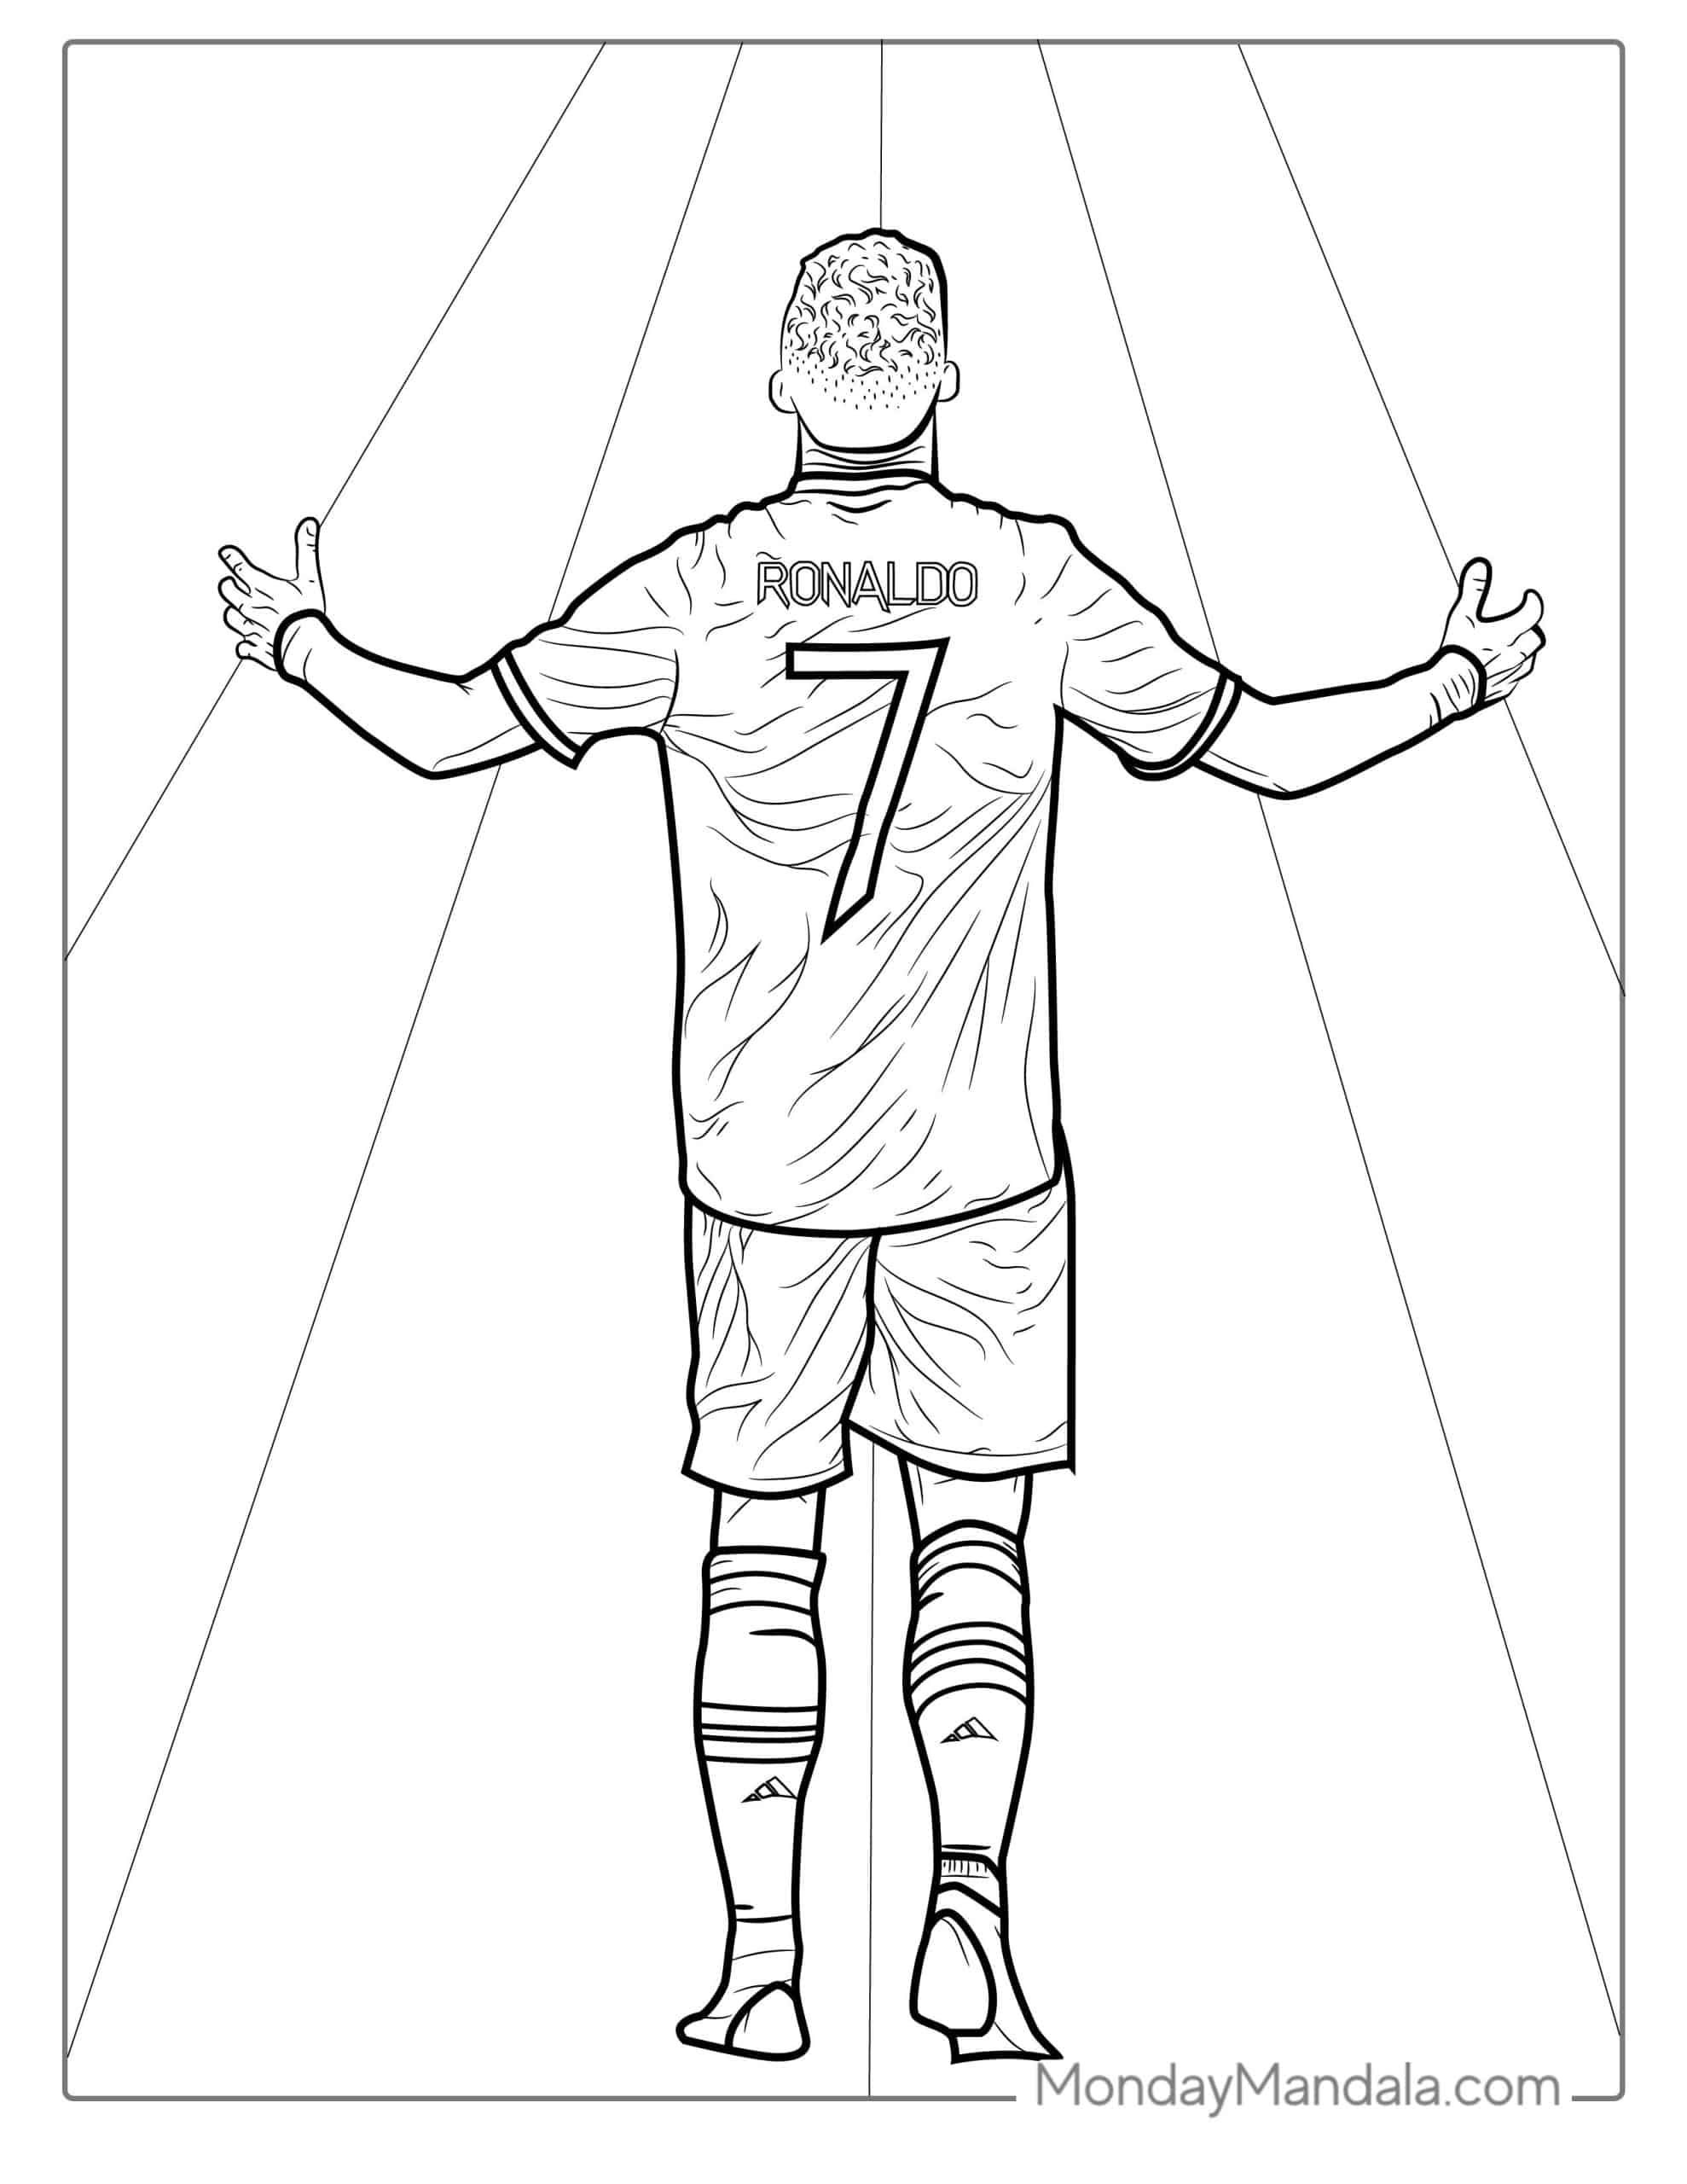 Ronaldo coloring pages free pdf printables cristiano ronaldo ronaldo color